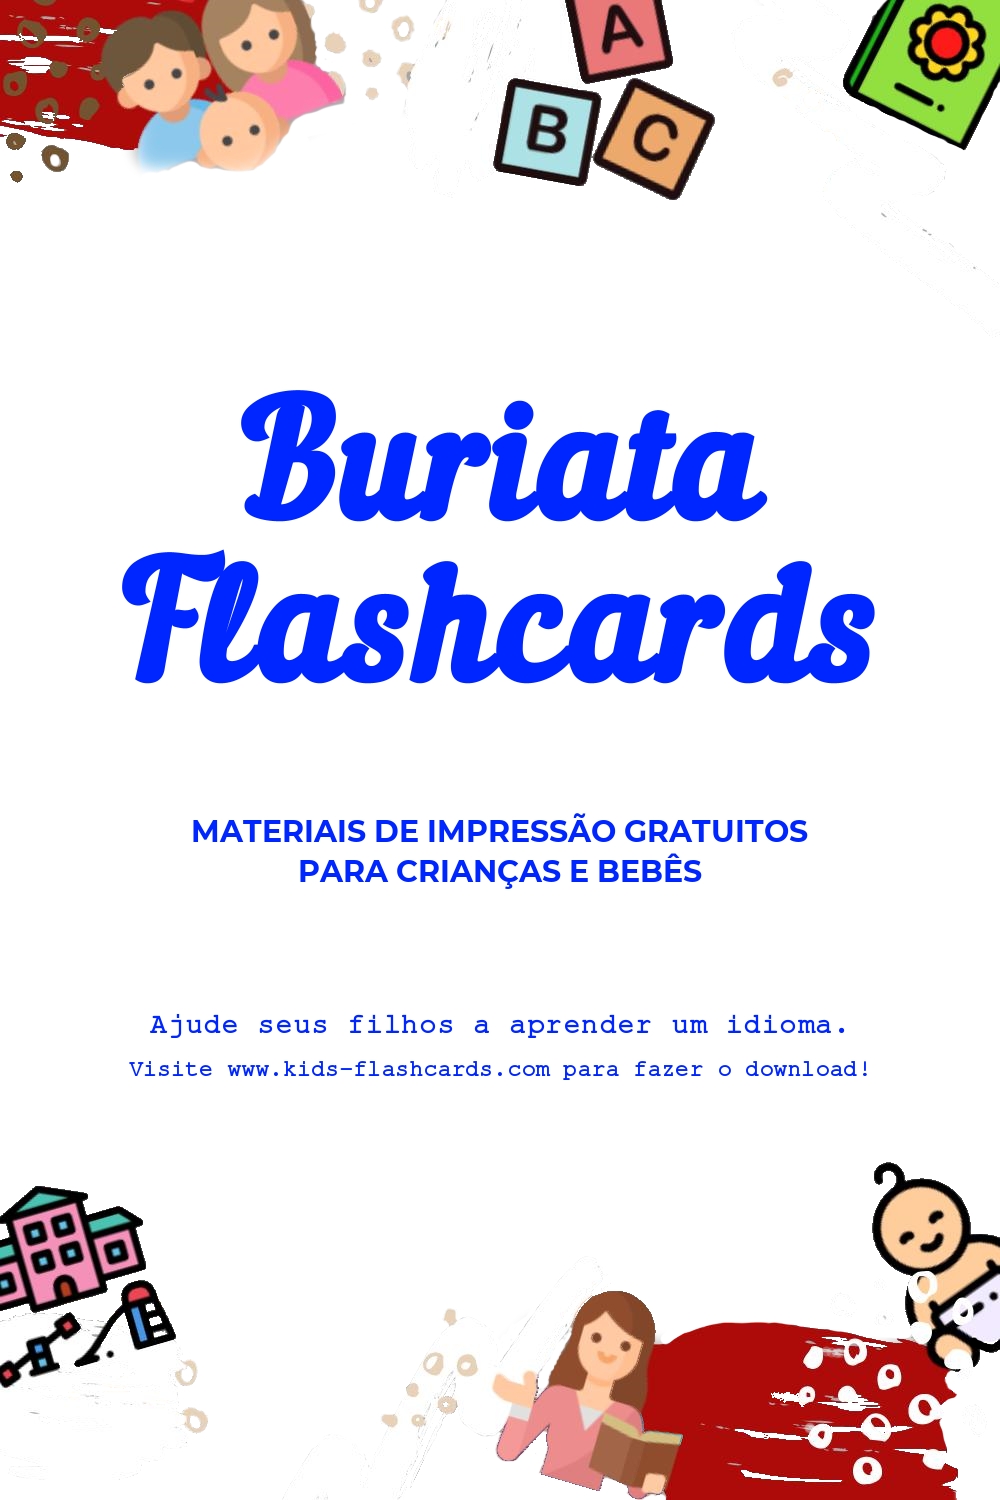 Fichas de trabalho para aprender a língua Buriataa